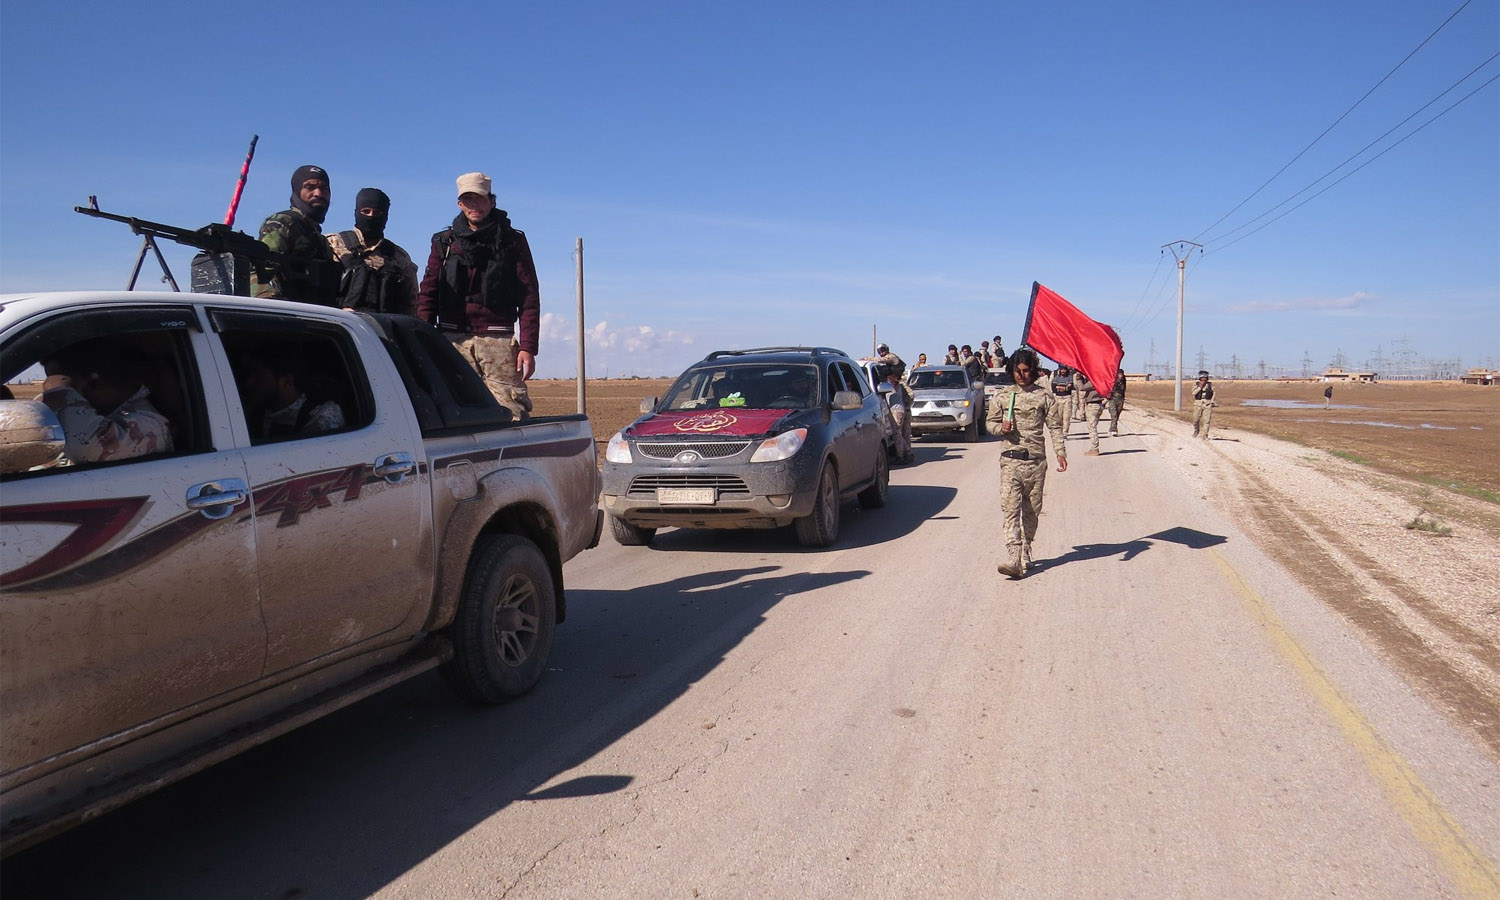 مقاتلون من قوات الصناديد خلال العمليات العسكرية التي شهدتها بلدة الهول ضد تنظيم "الدولة" شمال شرقي سوريا- 20 من تشرين الأول 2018 (المكتب الاعلامي لقوات الصناديد/ فيس بوك)